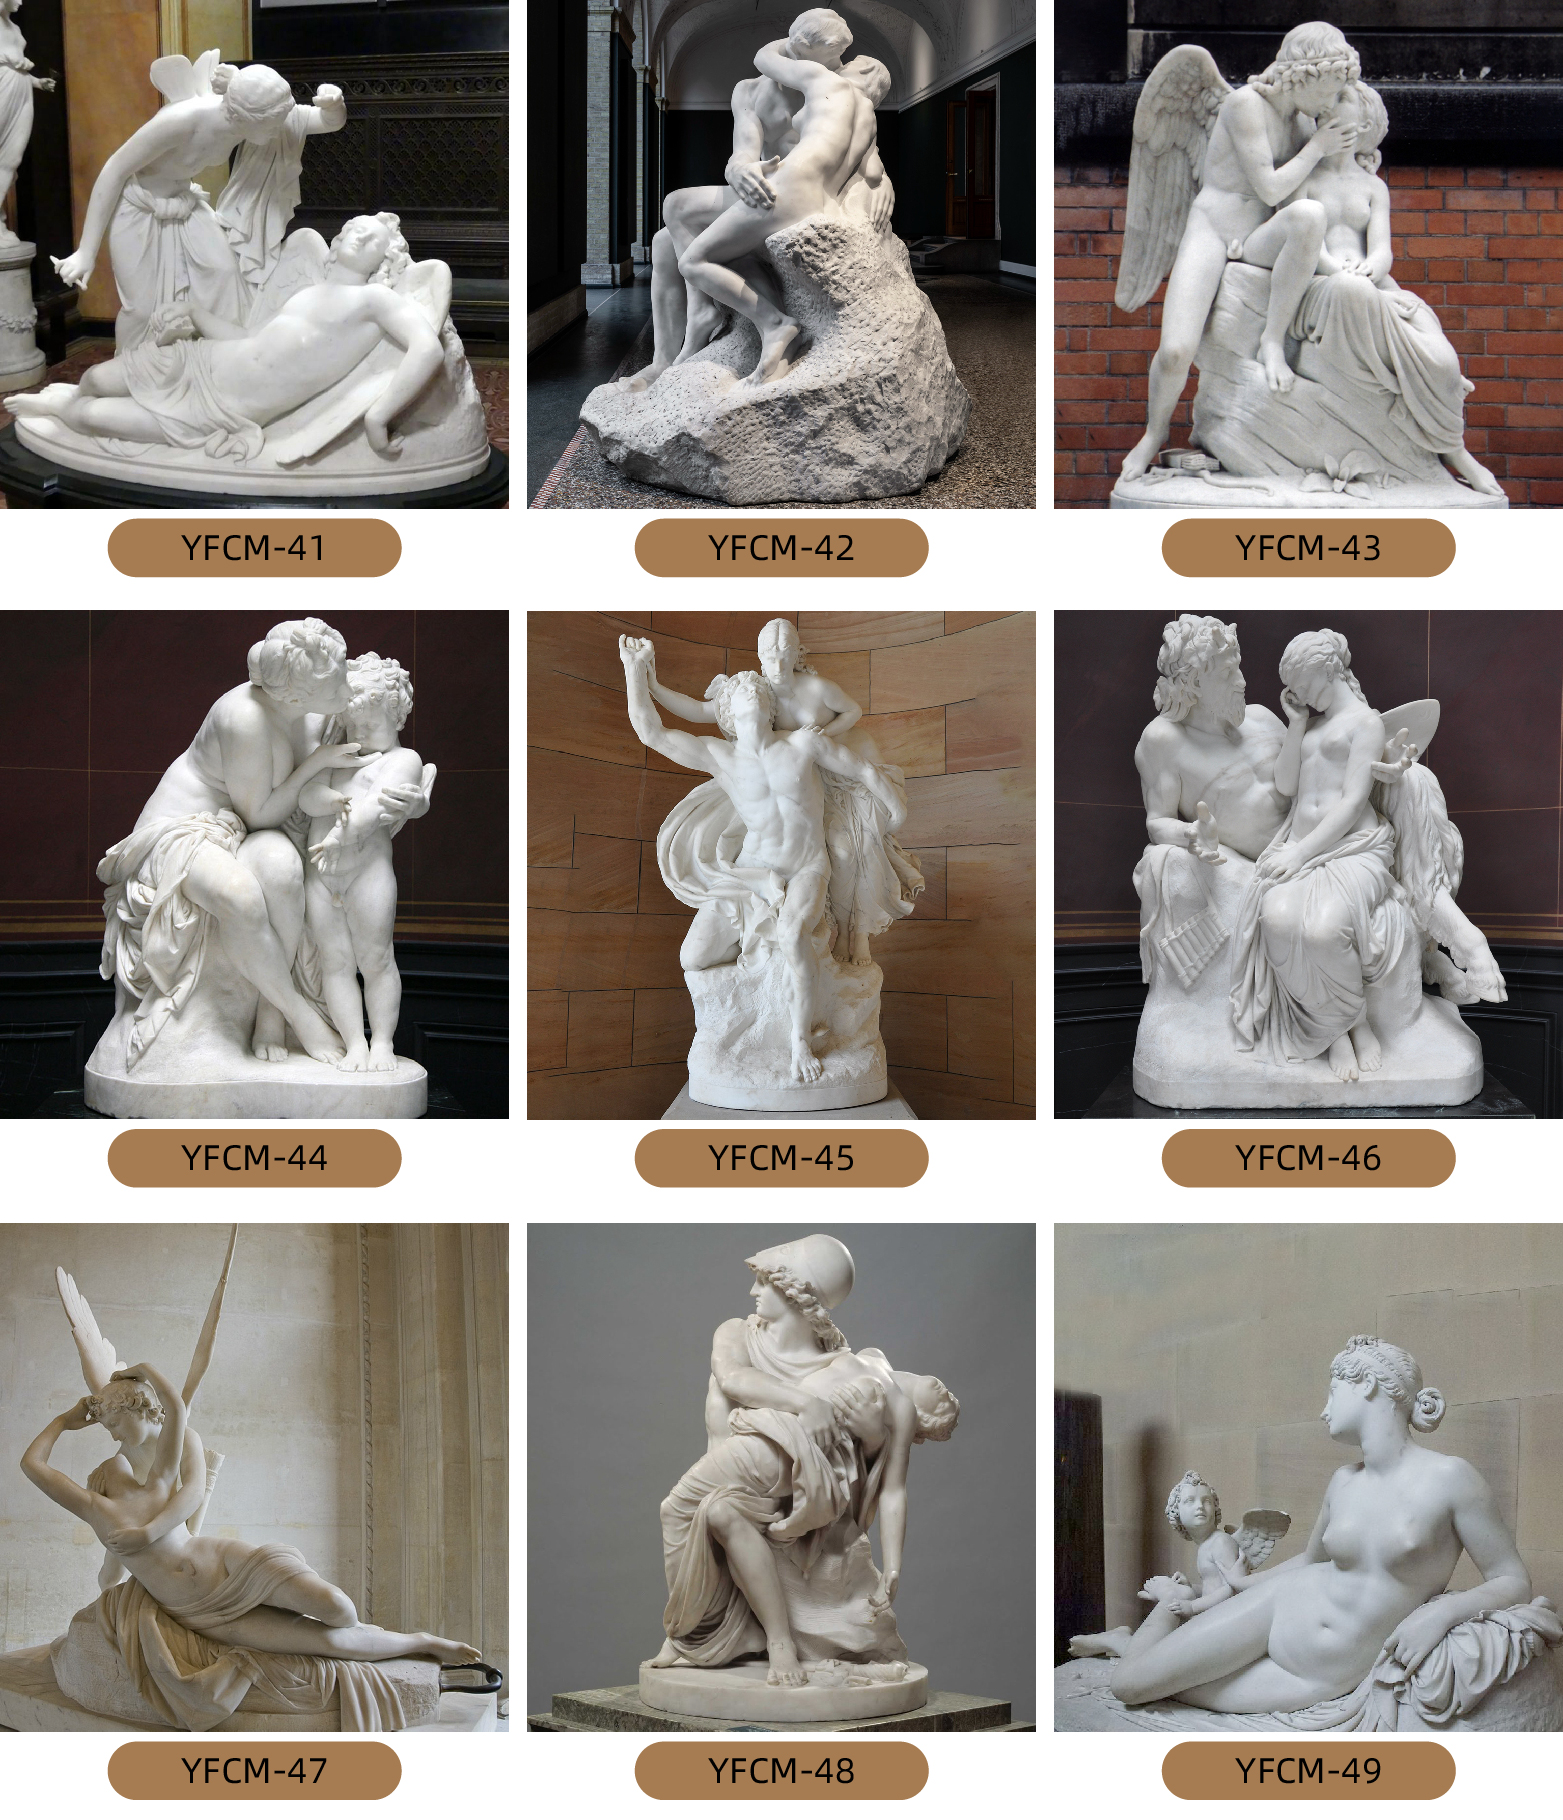 Diverse Range of Marble Famous Sculptures